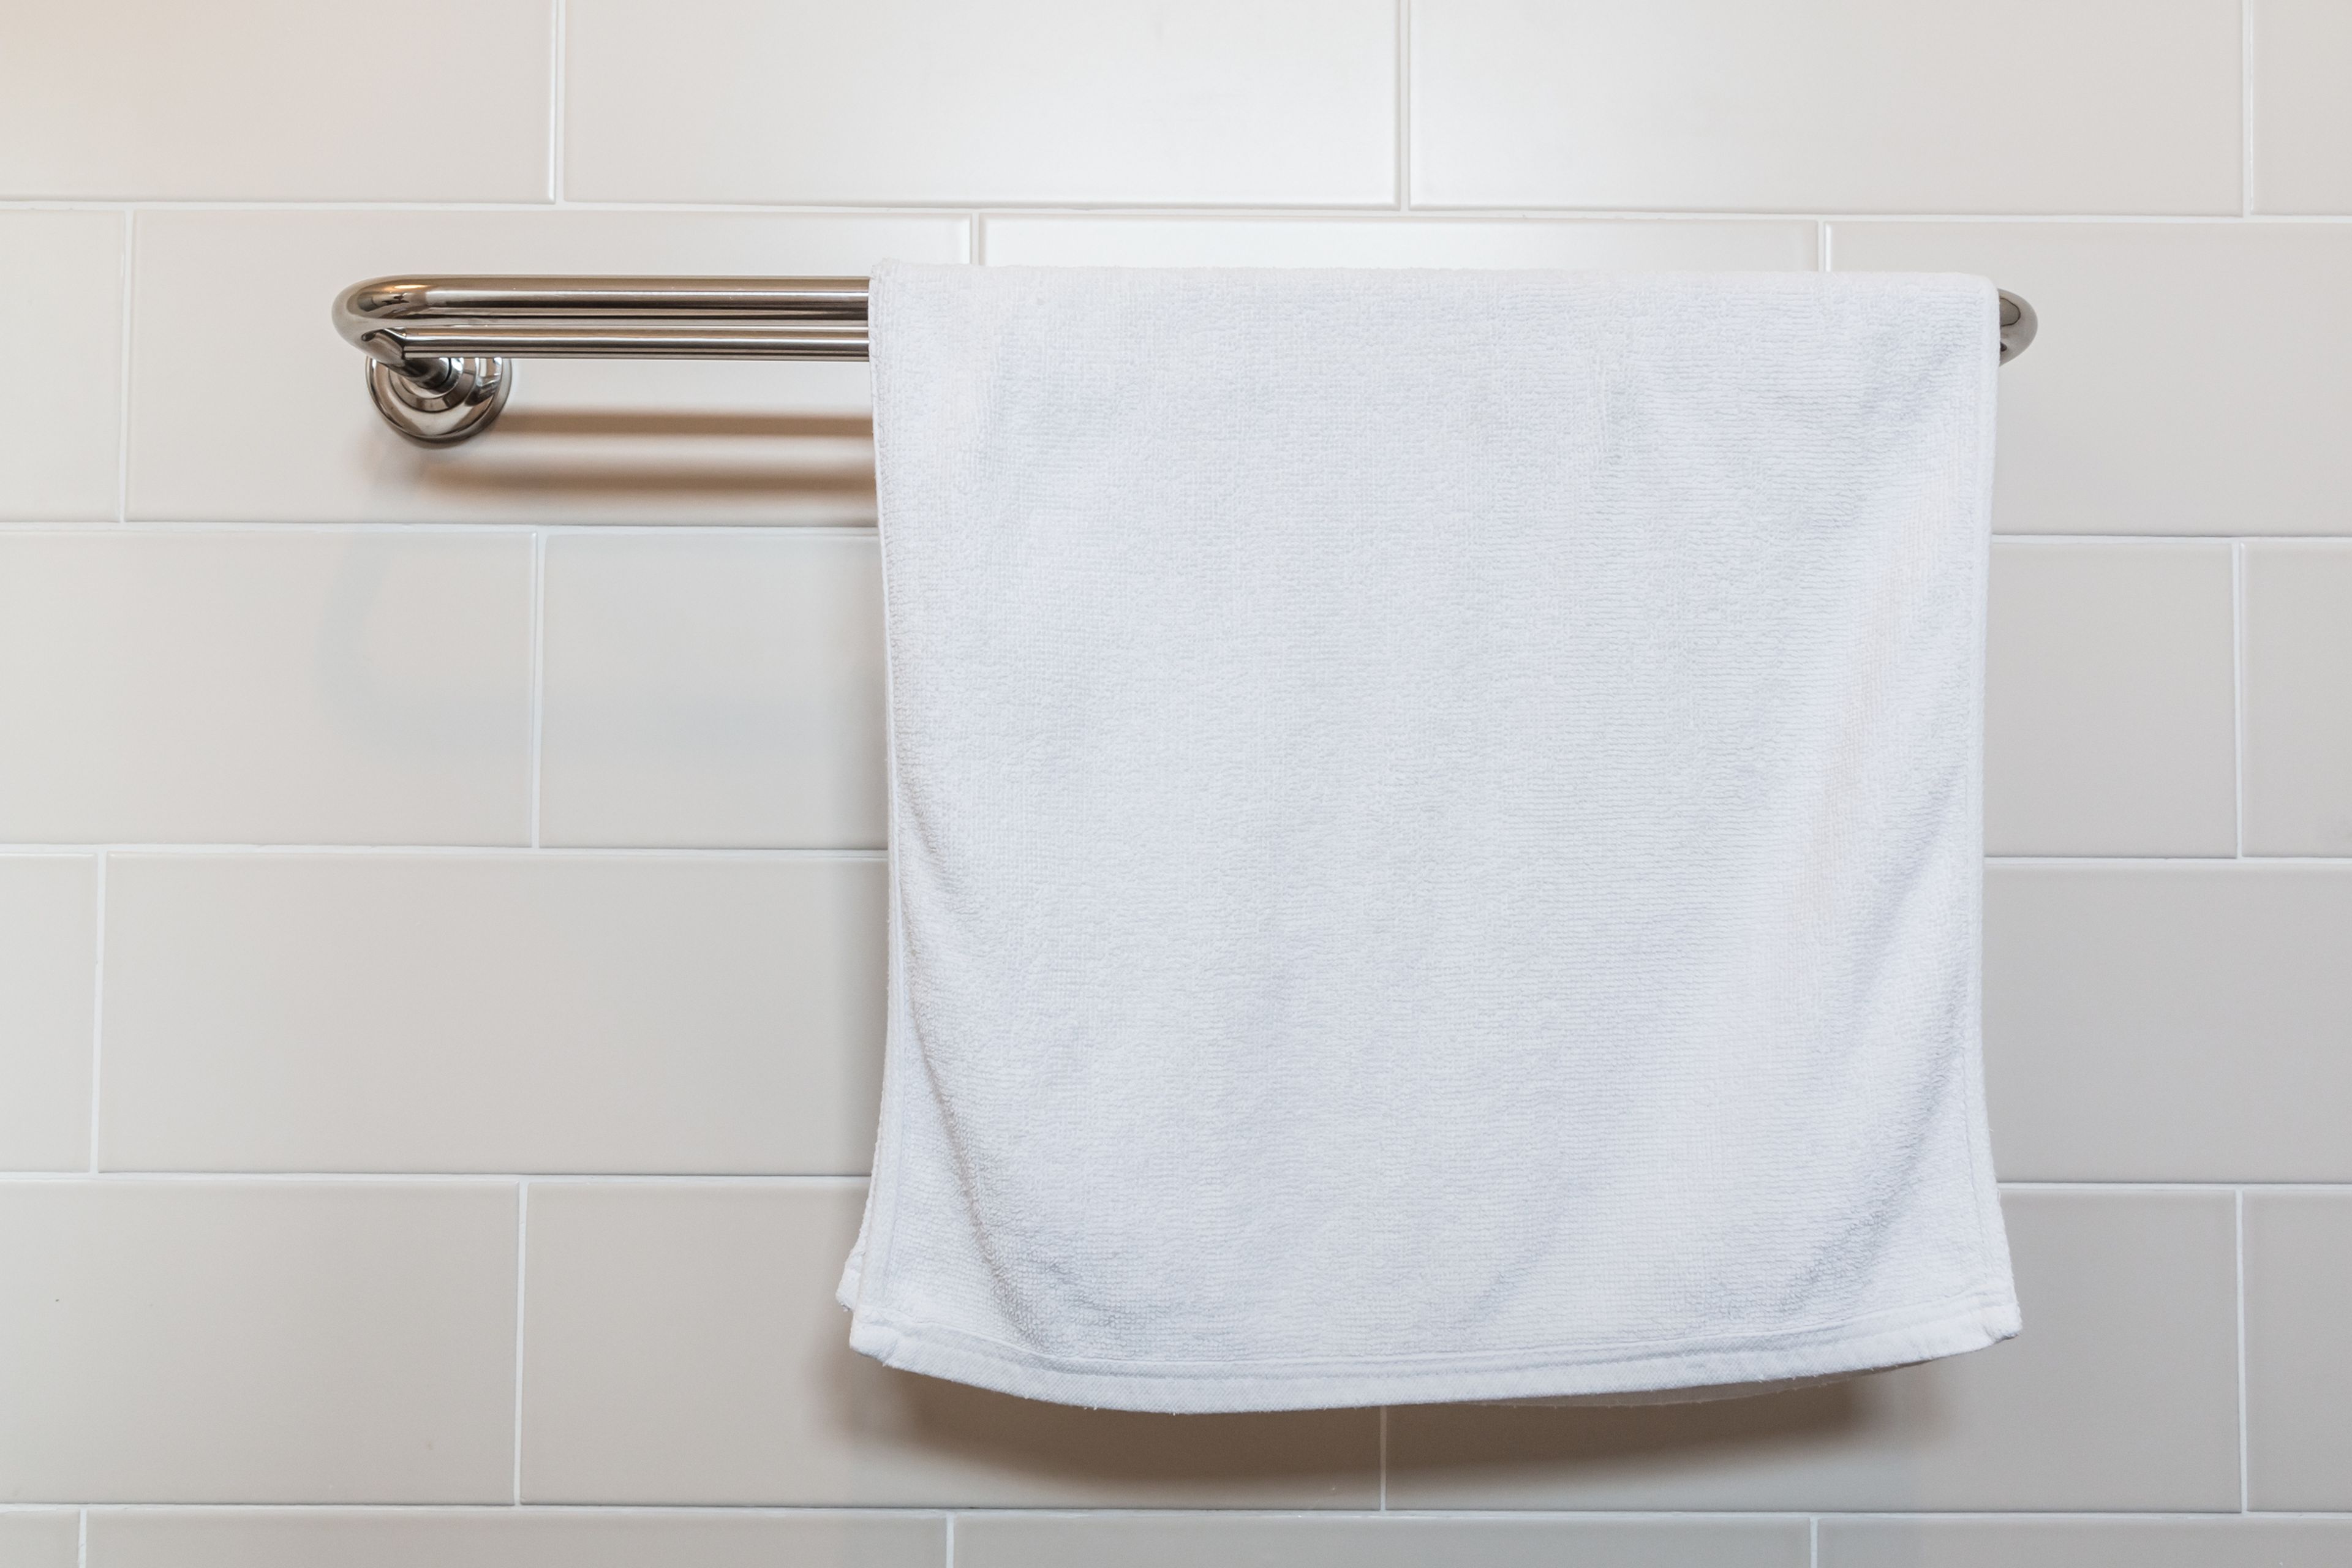 Cada cuánto hay que cambiar la toalla del baño por otra nueva?